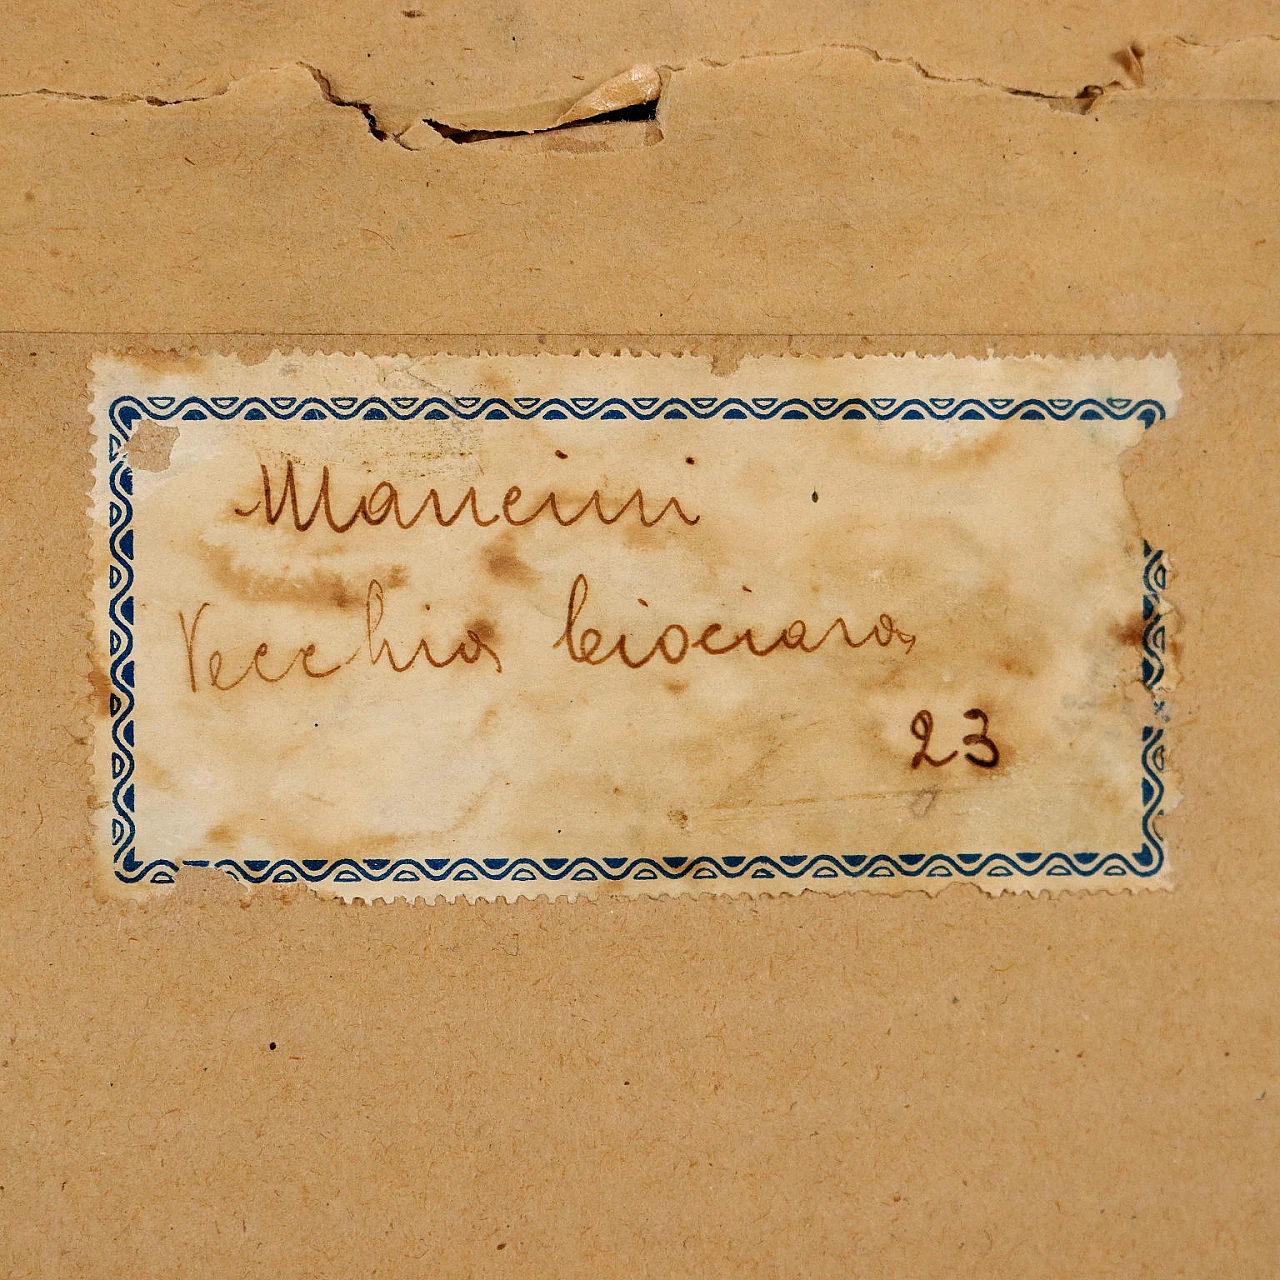 Antonio Mancini, Vecchia ciociara, pastels on paper, 1910 10